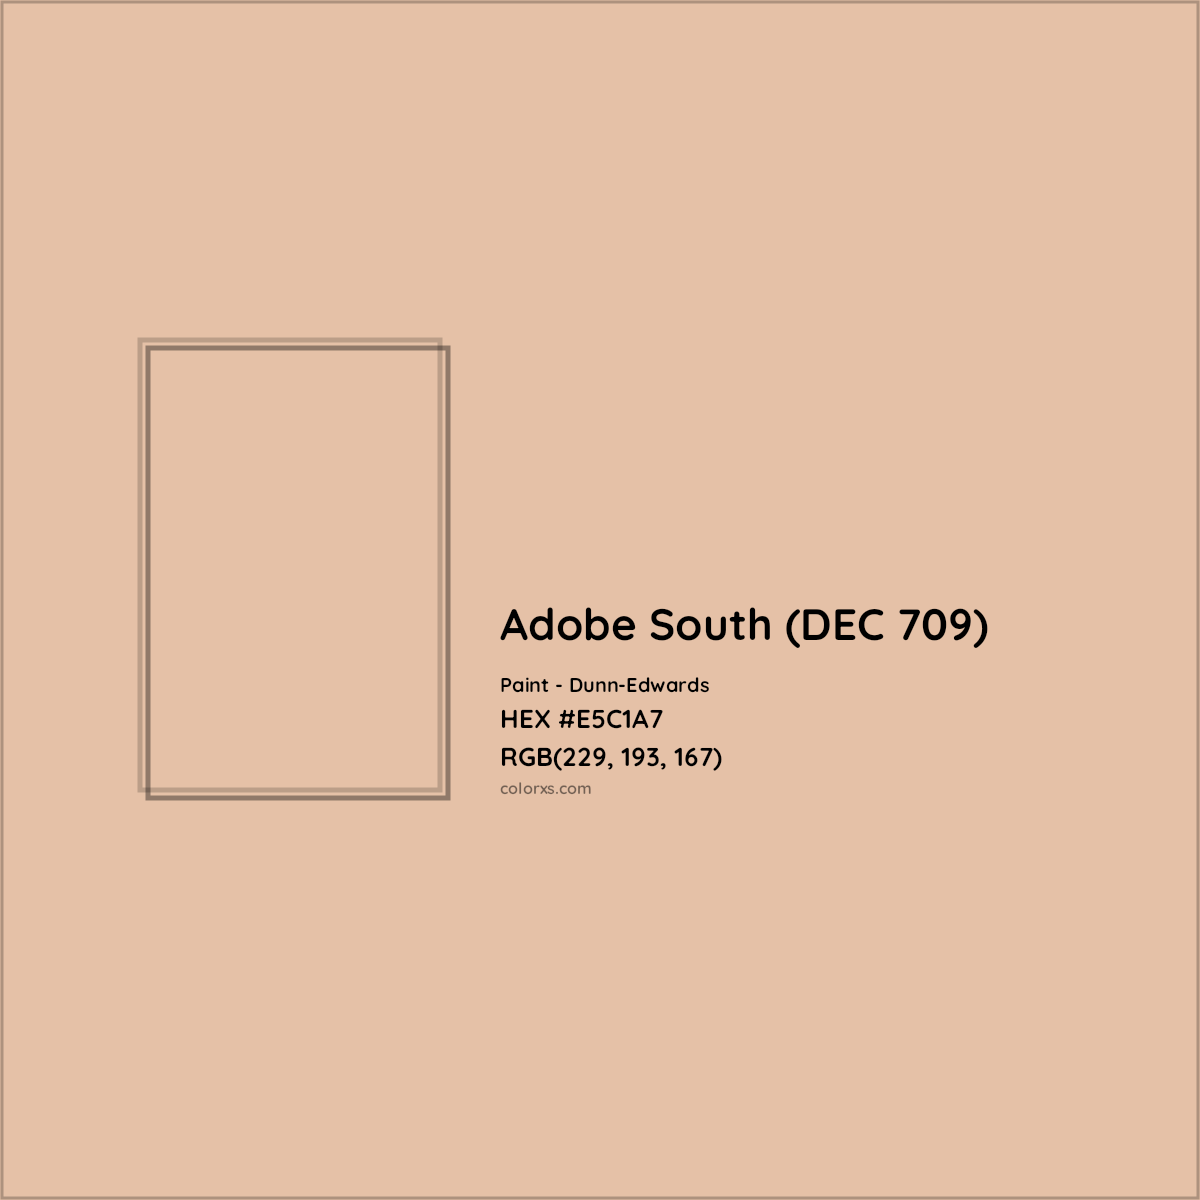 HEX #E5C1A7 Adobe South (DEC 709) Paint Dunn-Edwards - Color Code